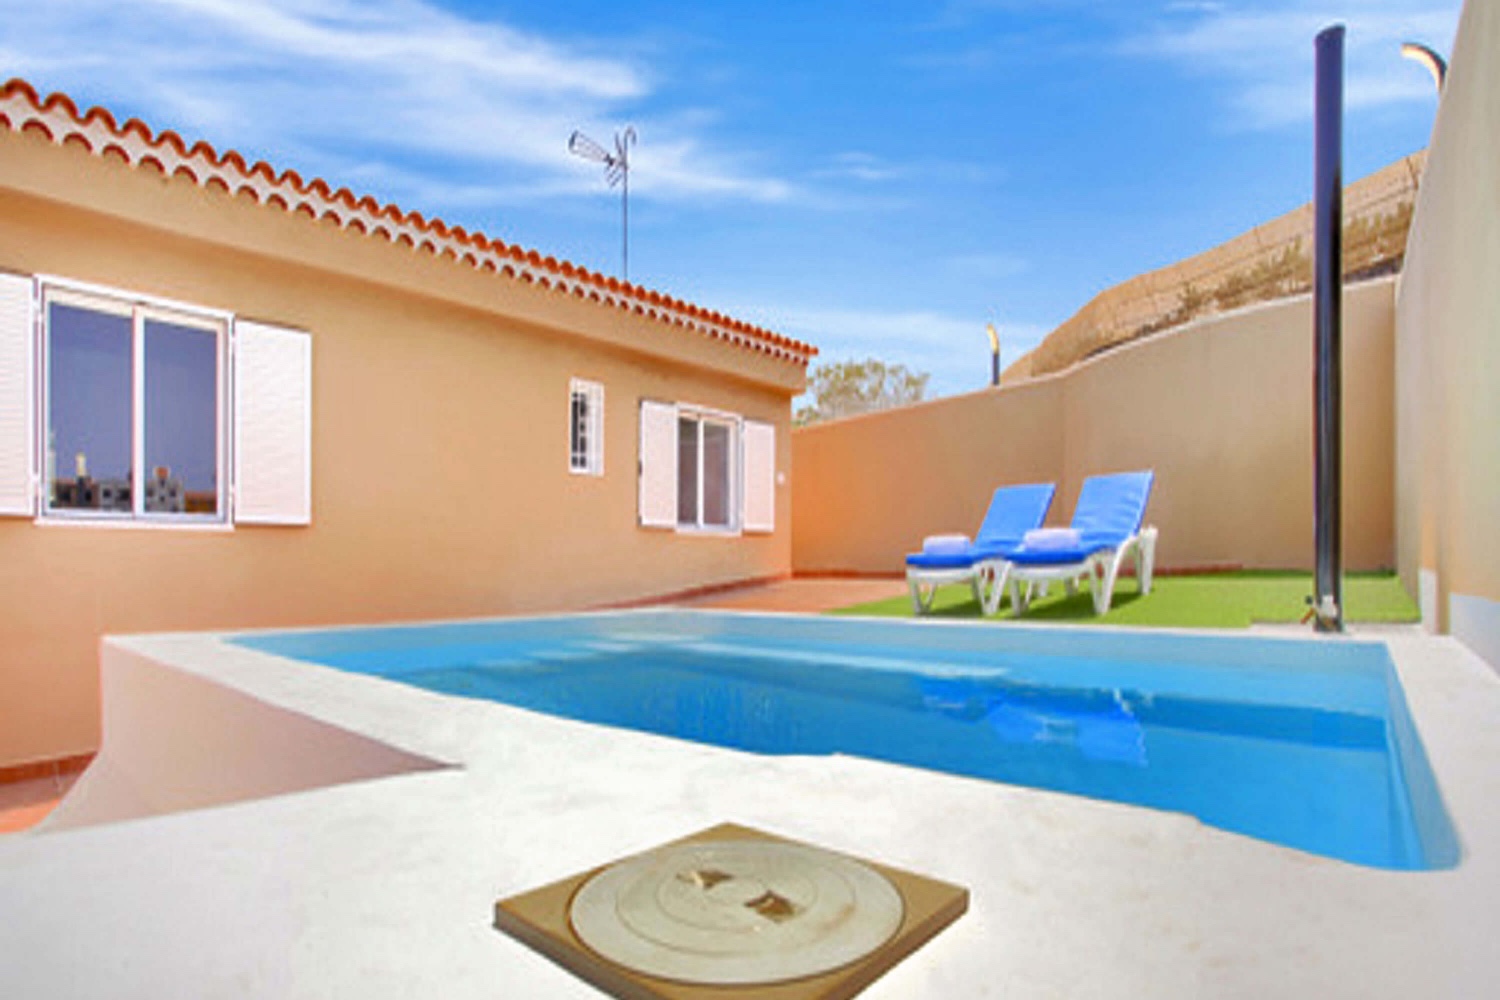 Belle maison indépendante avec piscine privée située à Guía de Isora à seulement 1,5 km de la plage de San Juán